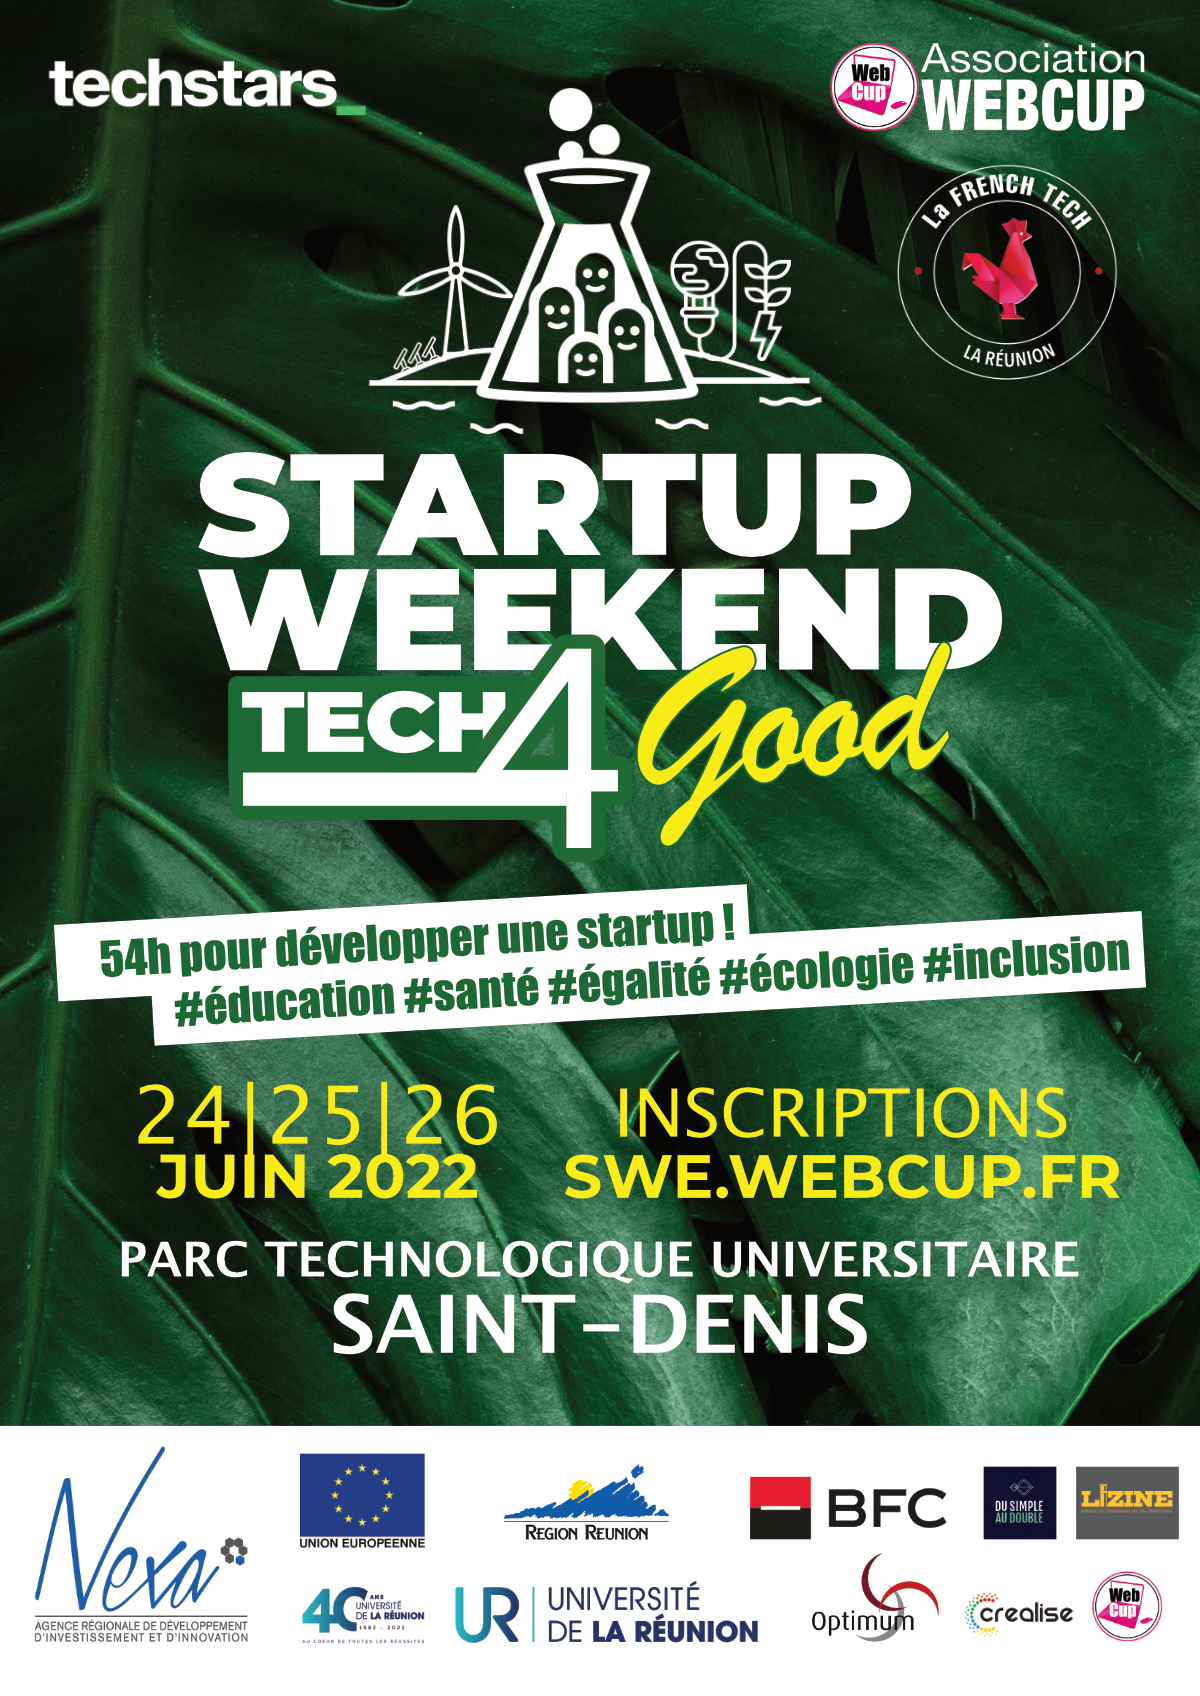 Le Startup Weekend de retour avec une nouvelle thématique : #Tech4Good en partenariat avec French Tech la Réunion